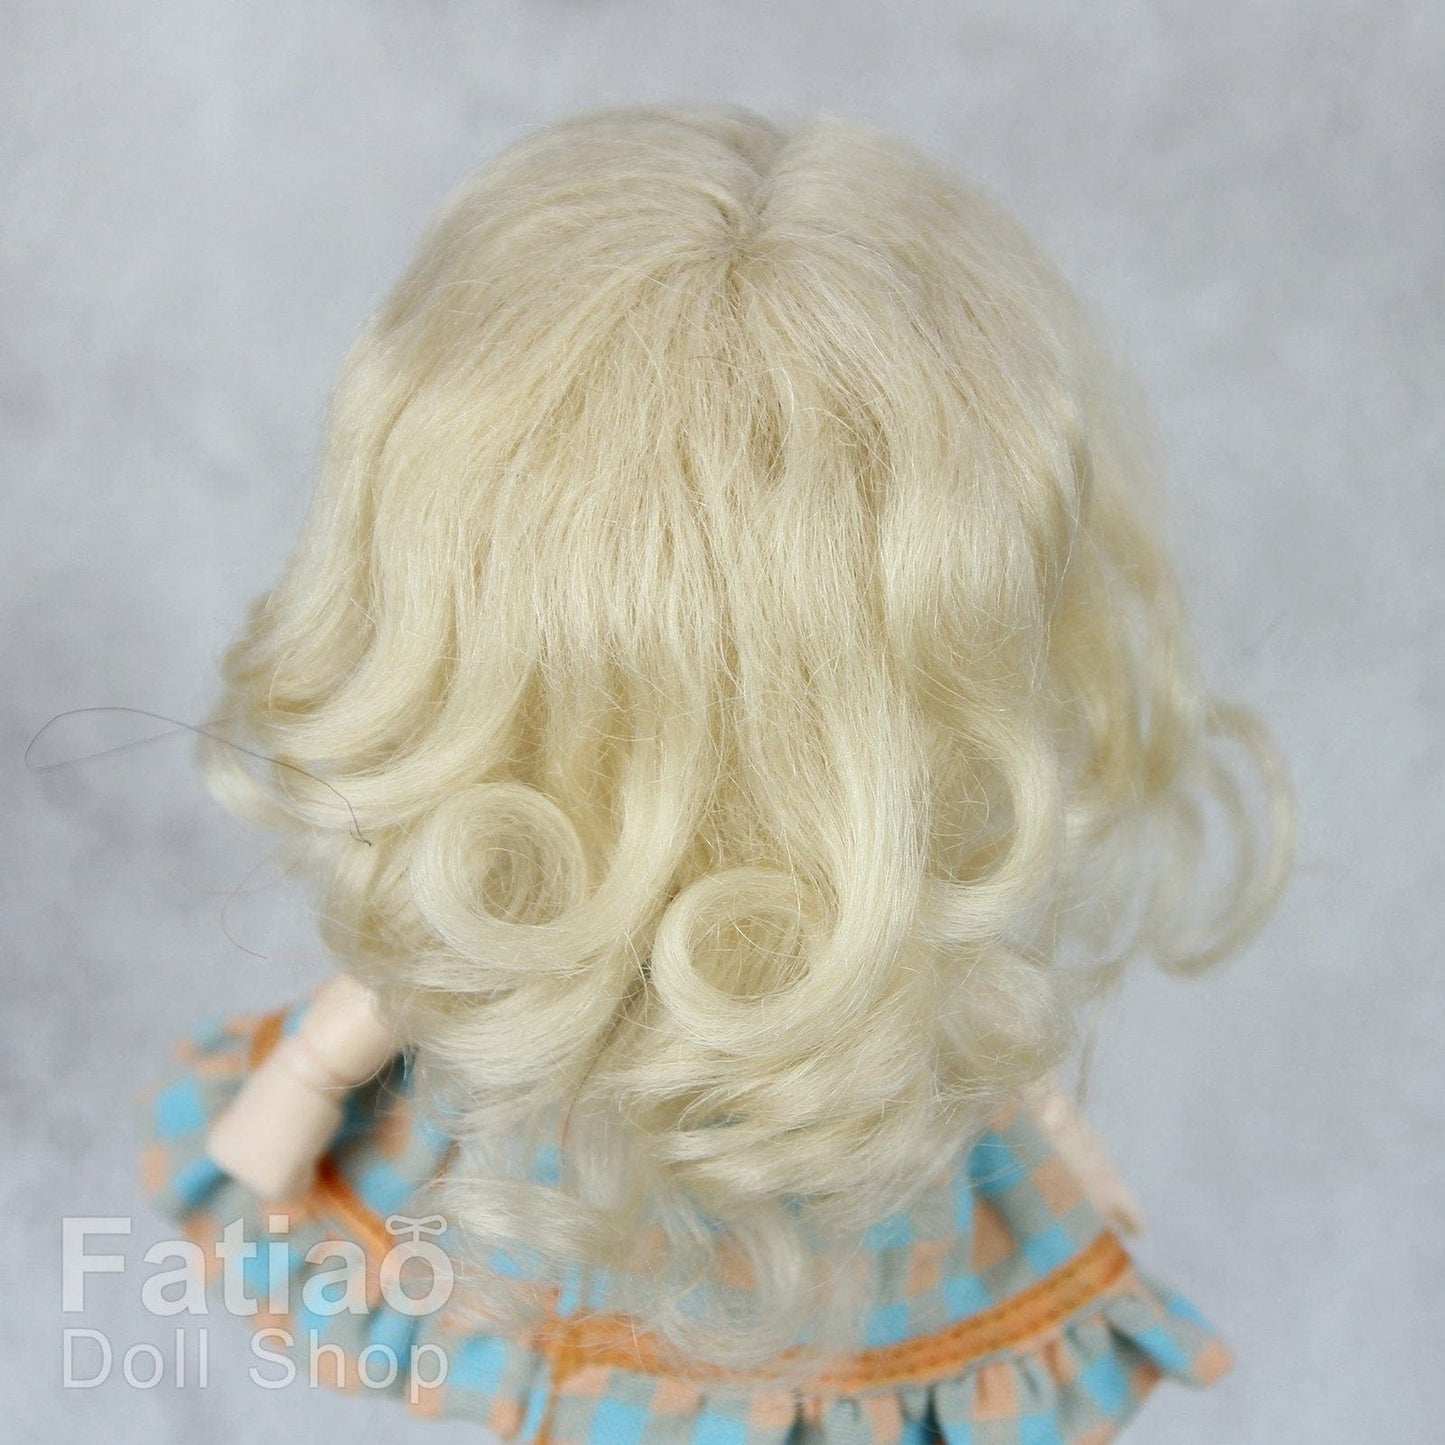 【Fatiao Doll Shop】FWF-039M 娃用假髮 多色 / 3-4吋 BJD 12分 pukipuki